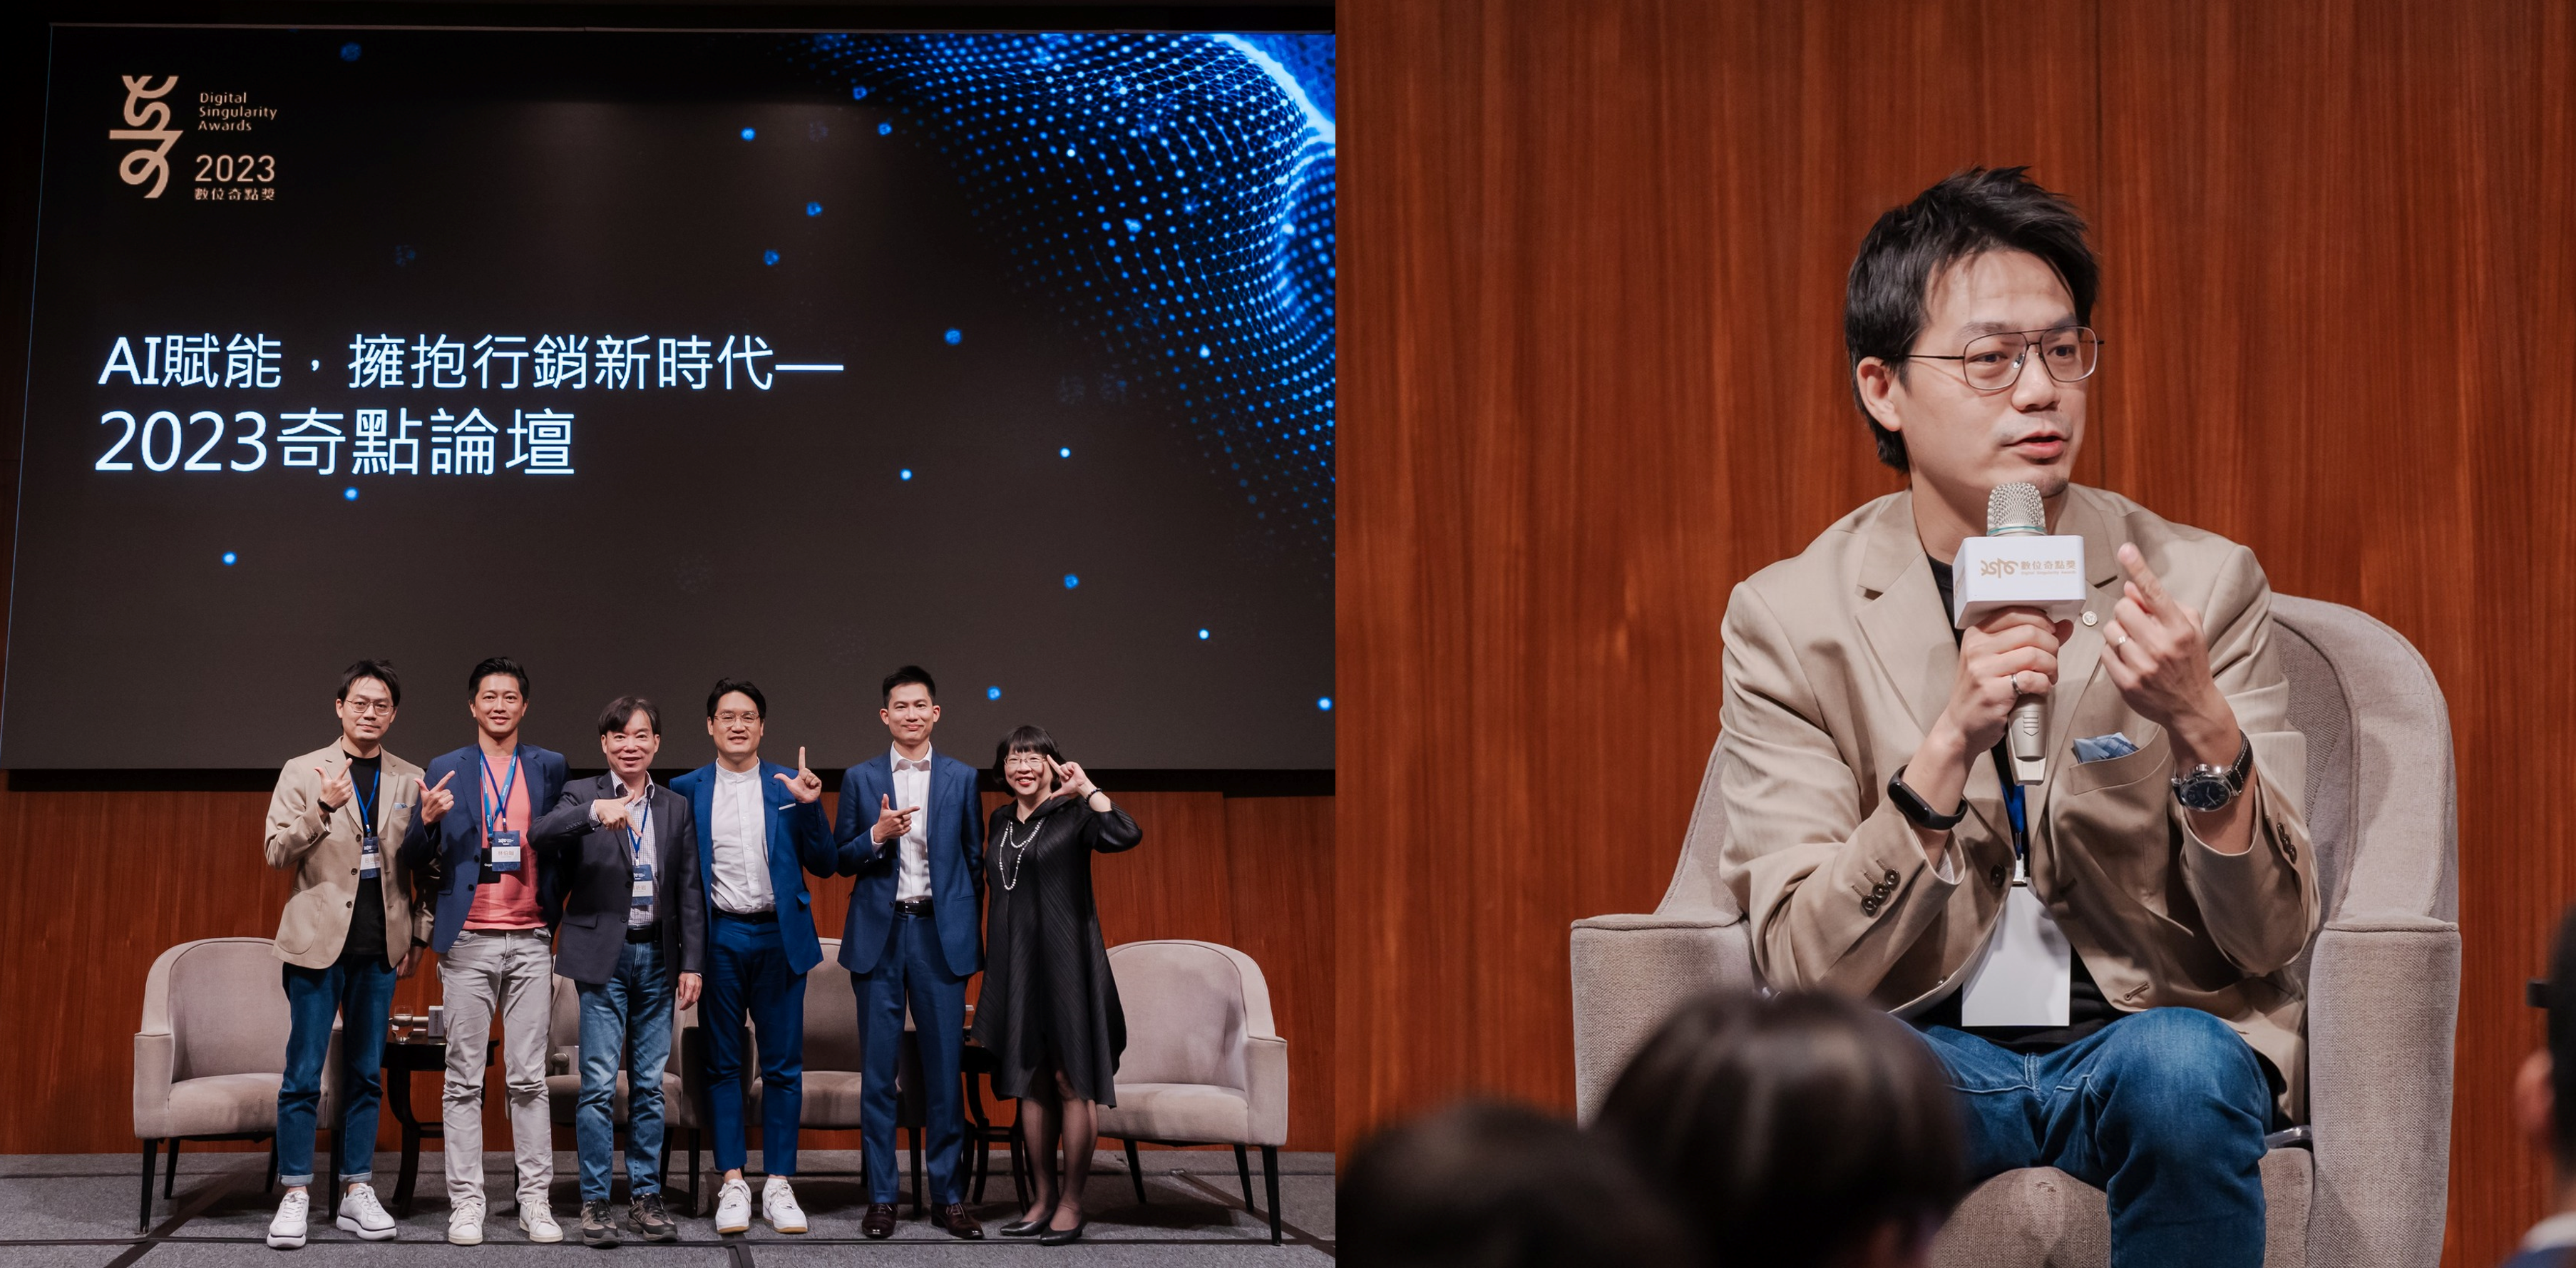 《2023奇點論壇》傑思‧愛德威副總經理呂琦瑋參與探討AI應用趨勢與新商機